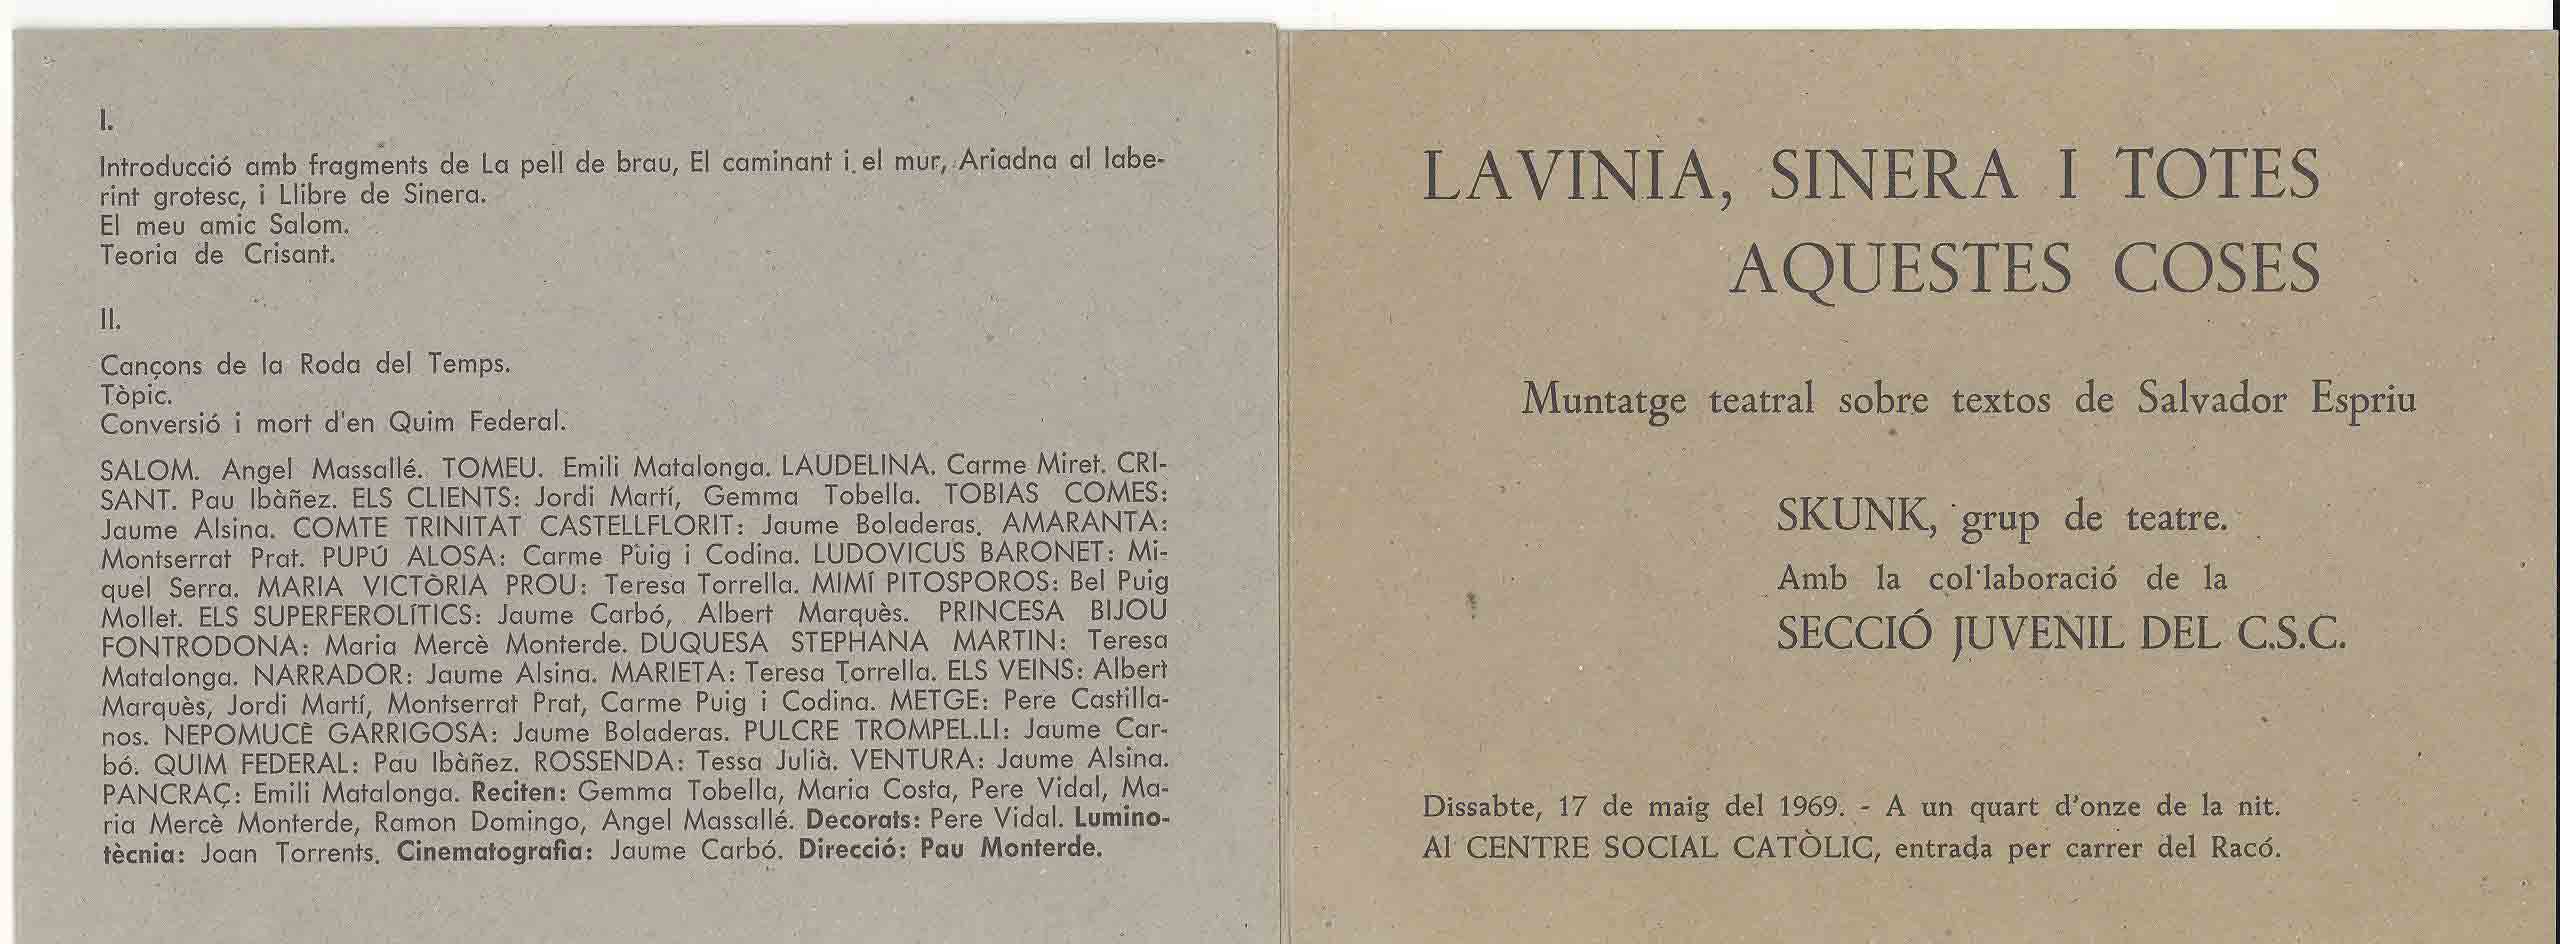 Programa de mà. Lavinia, Sinera i totes aquestes coses. Terrassa. 1969